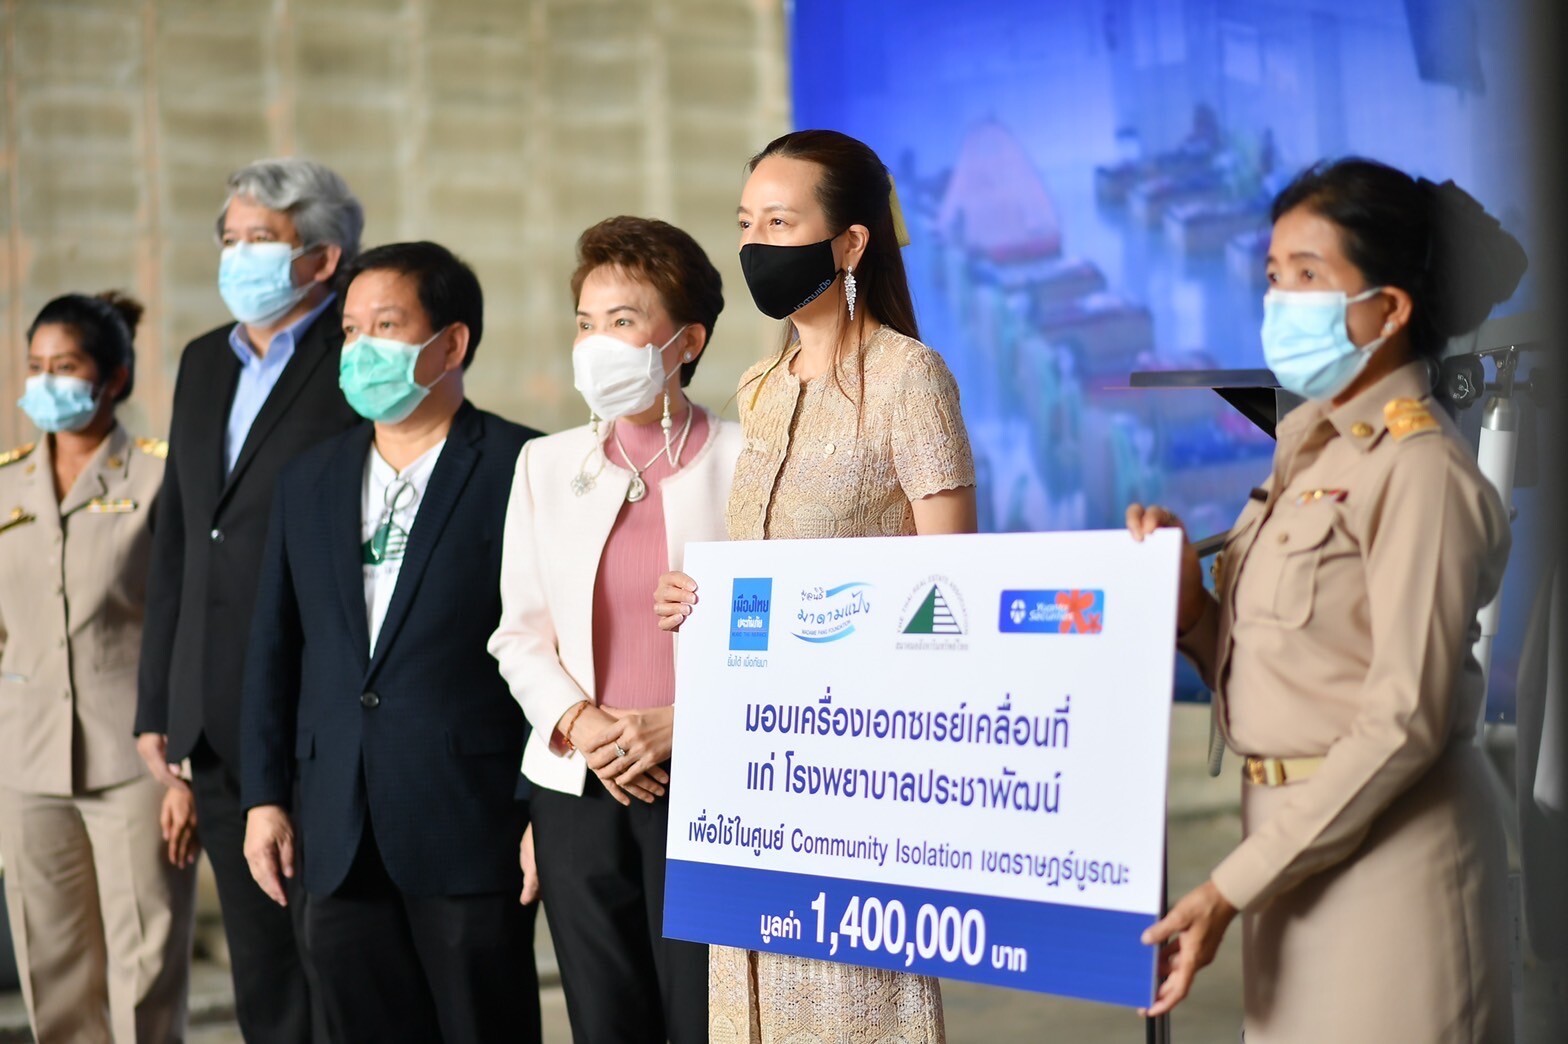 มูลนิธิมาดามแป้ง และ เมืองไทยประกันภัย สานต่องานสู้วิกฤต ขยายความช่วยเหลือผู้ป่วยโควิด-19 ใน 5 เขตรอบกรุงเทพฯ